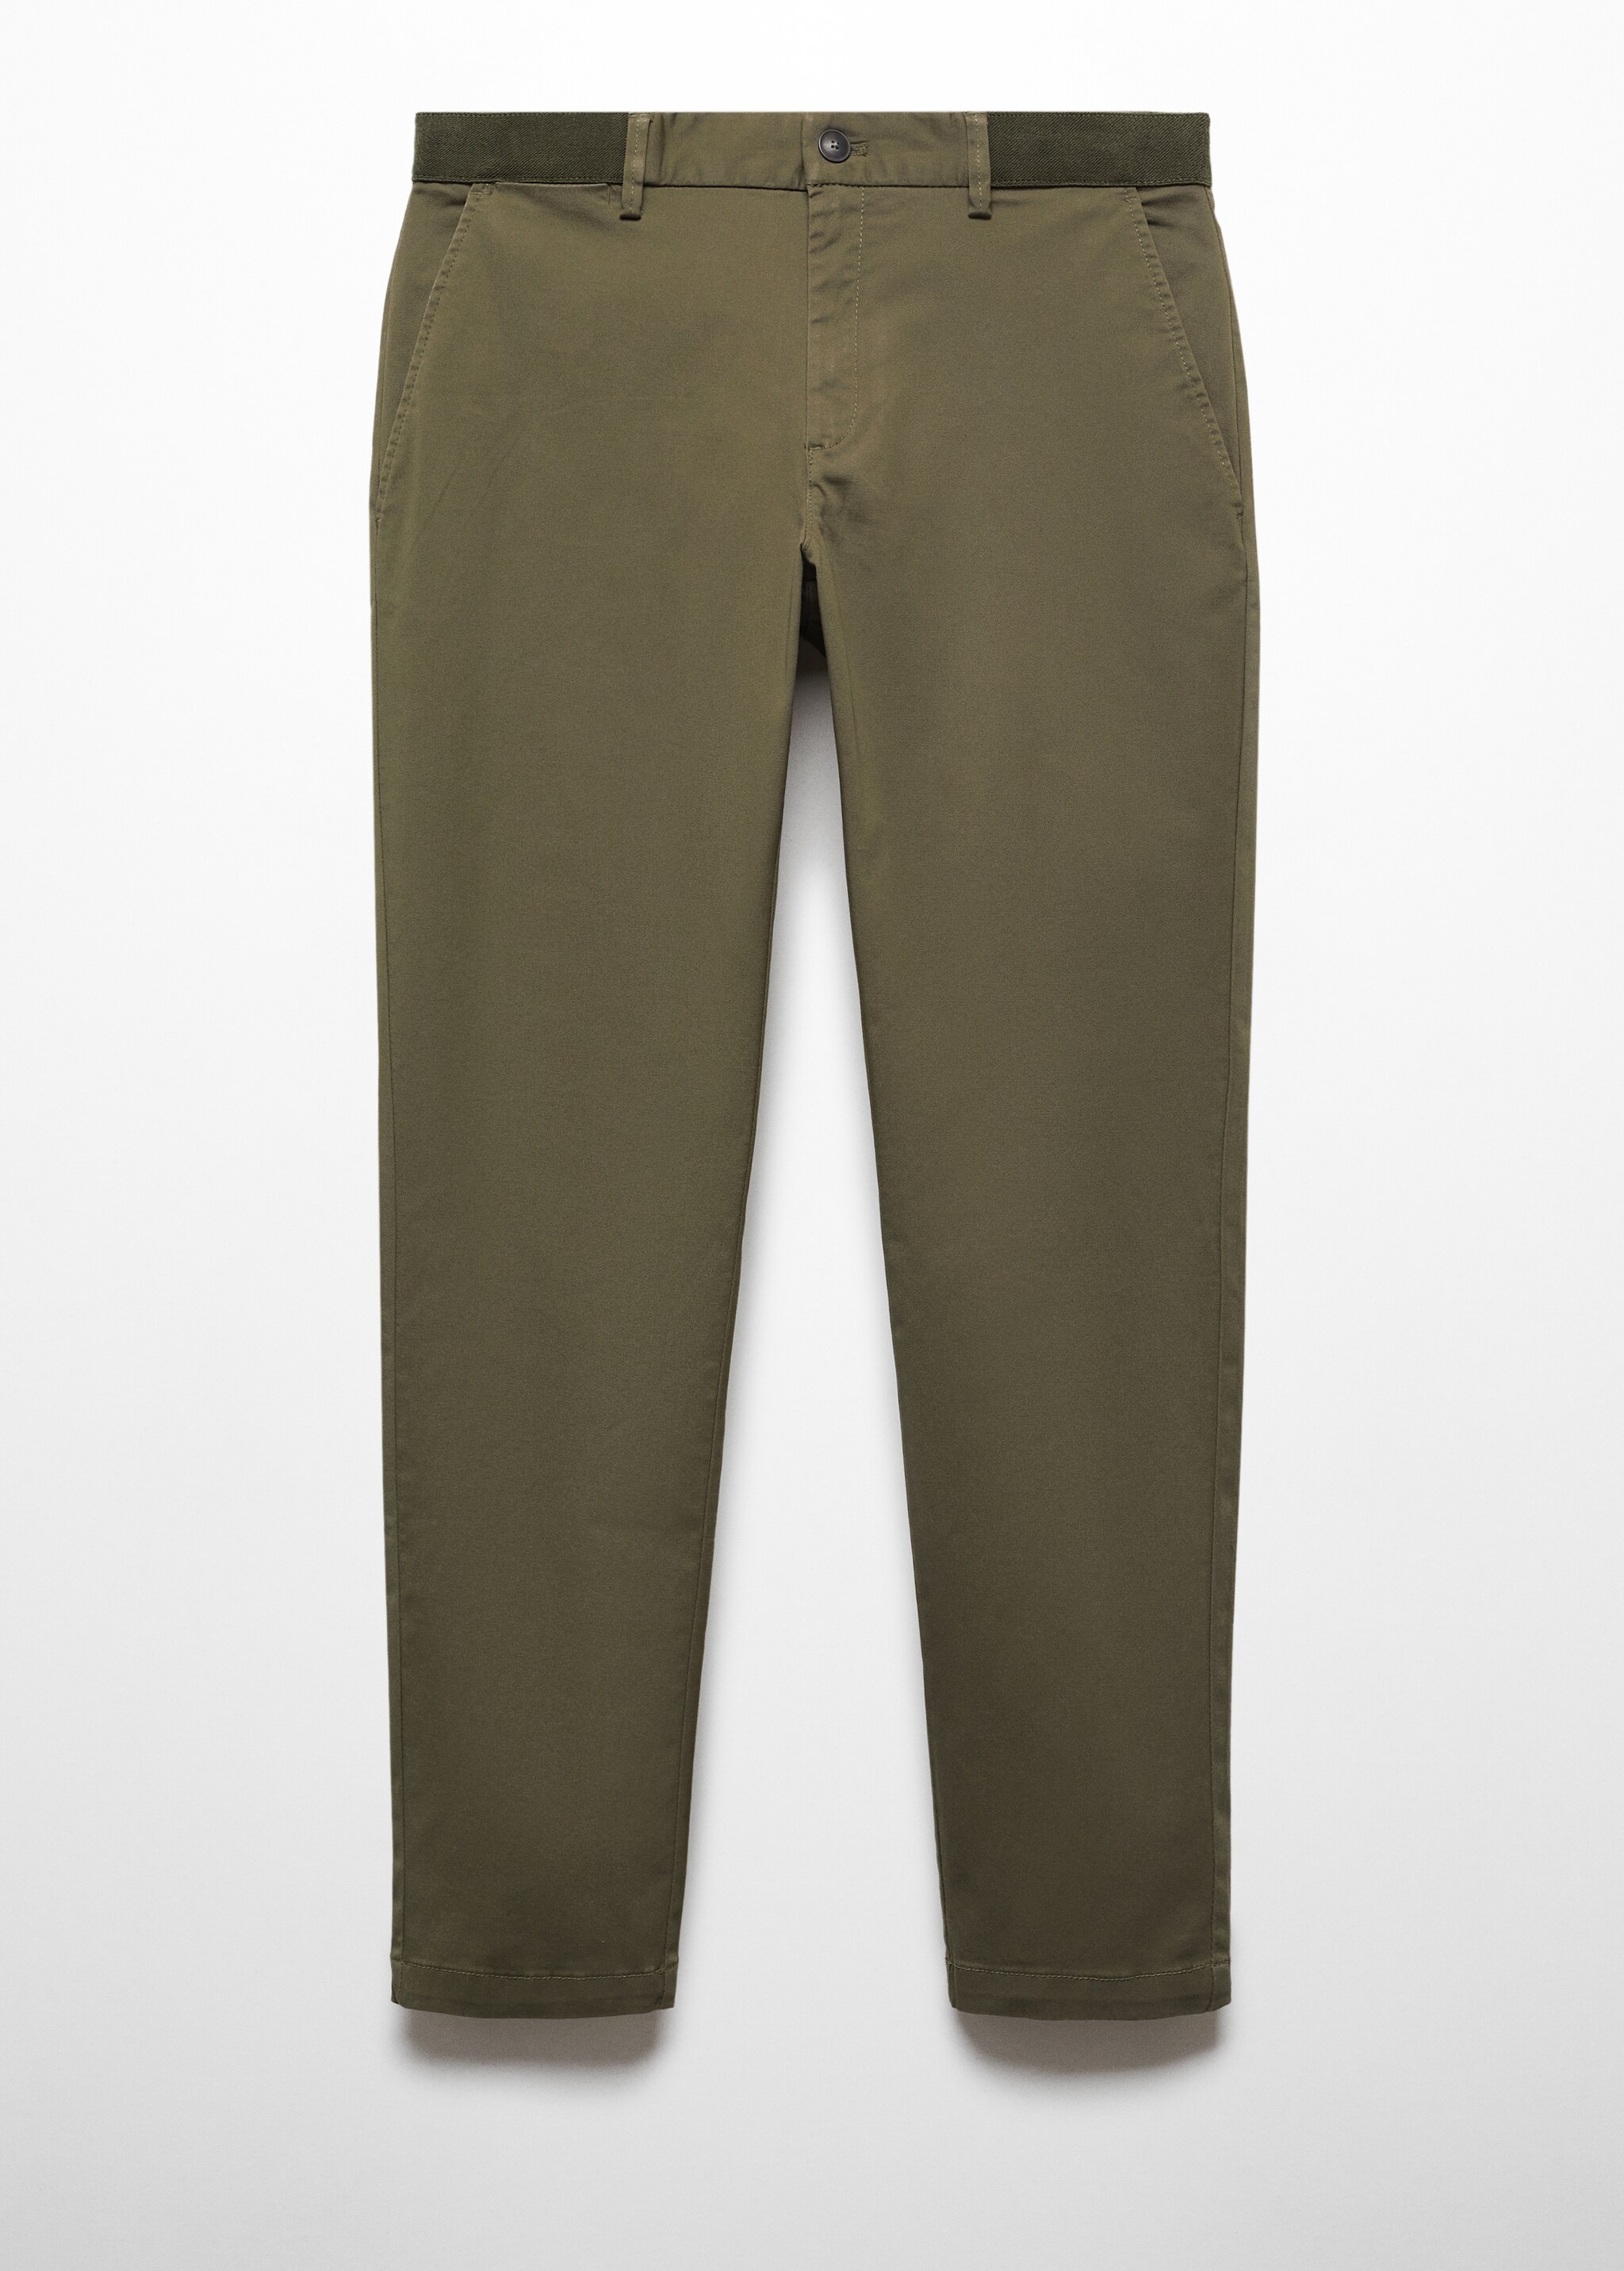 Pantalón algodón tapered crop - Artículo sin modelo